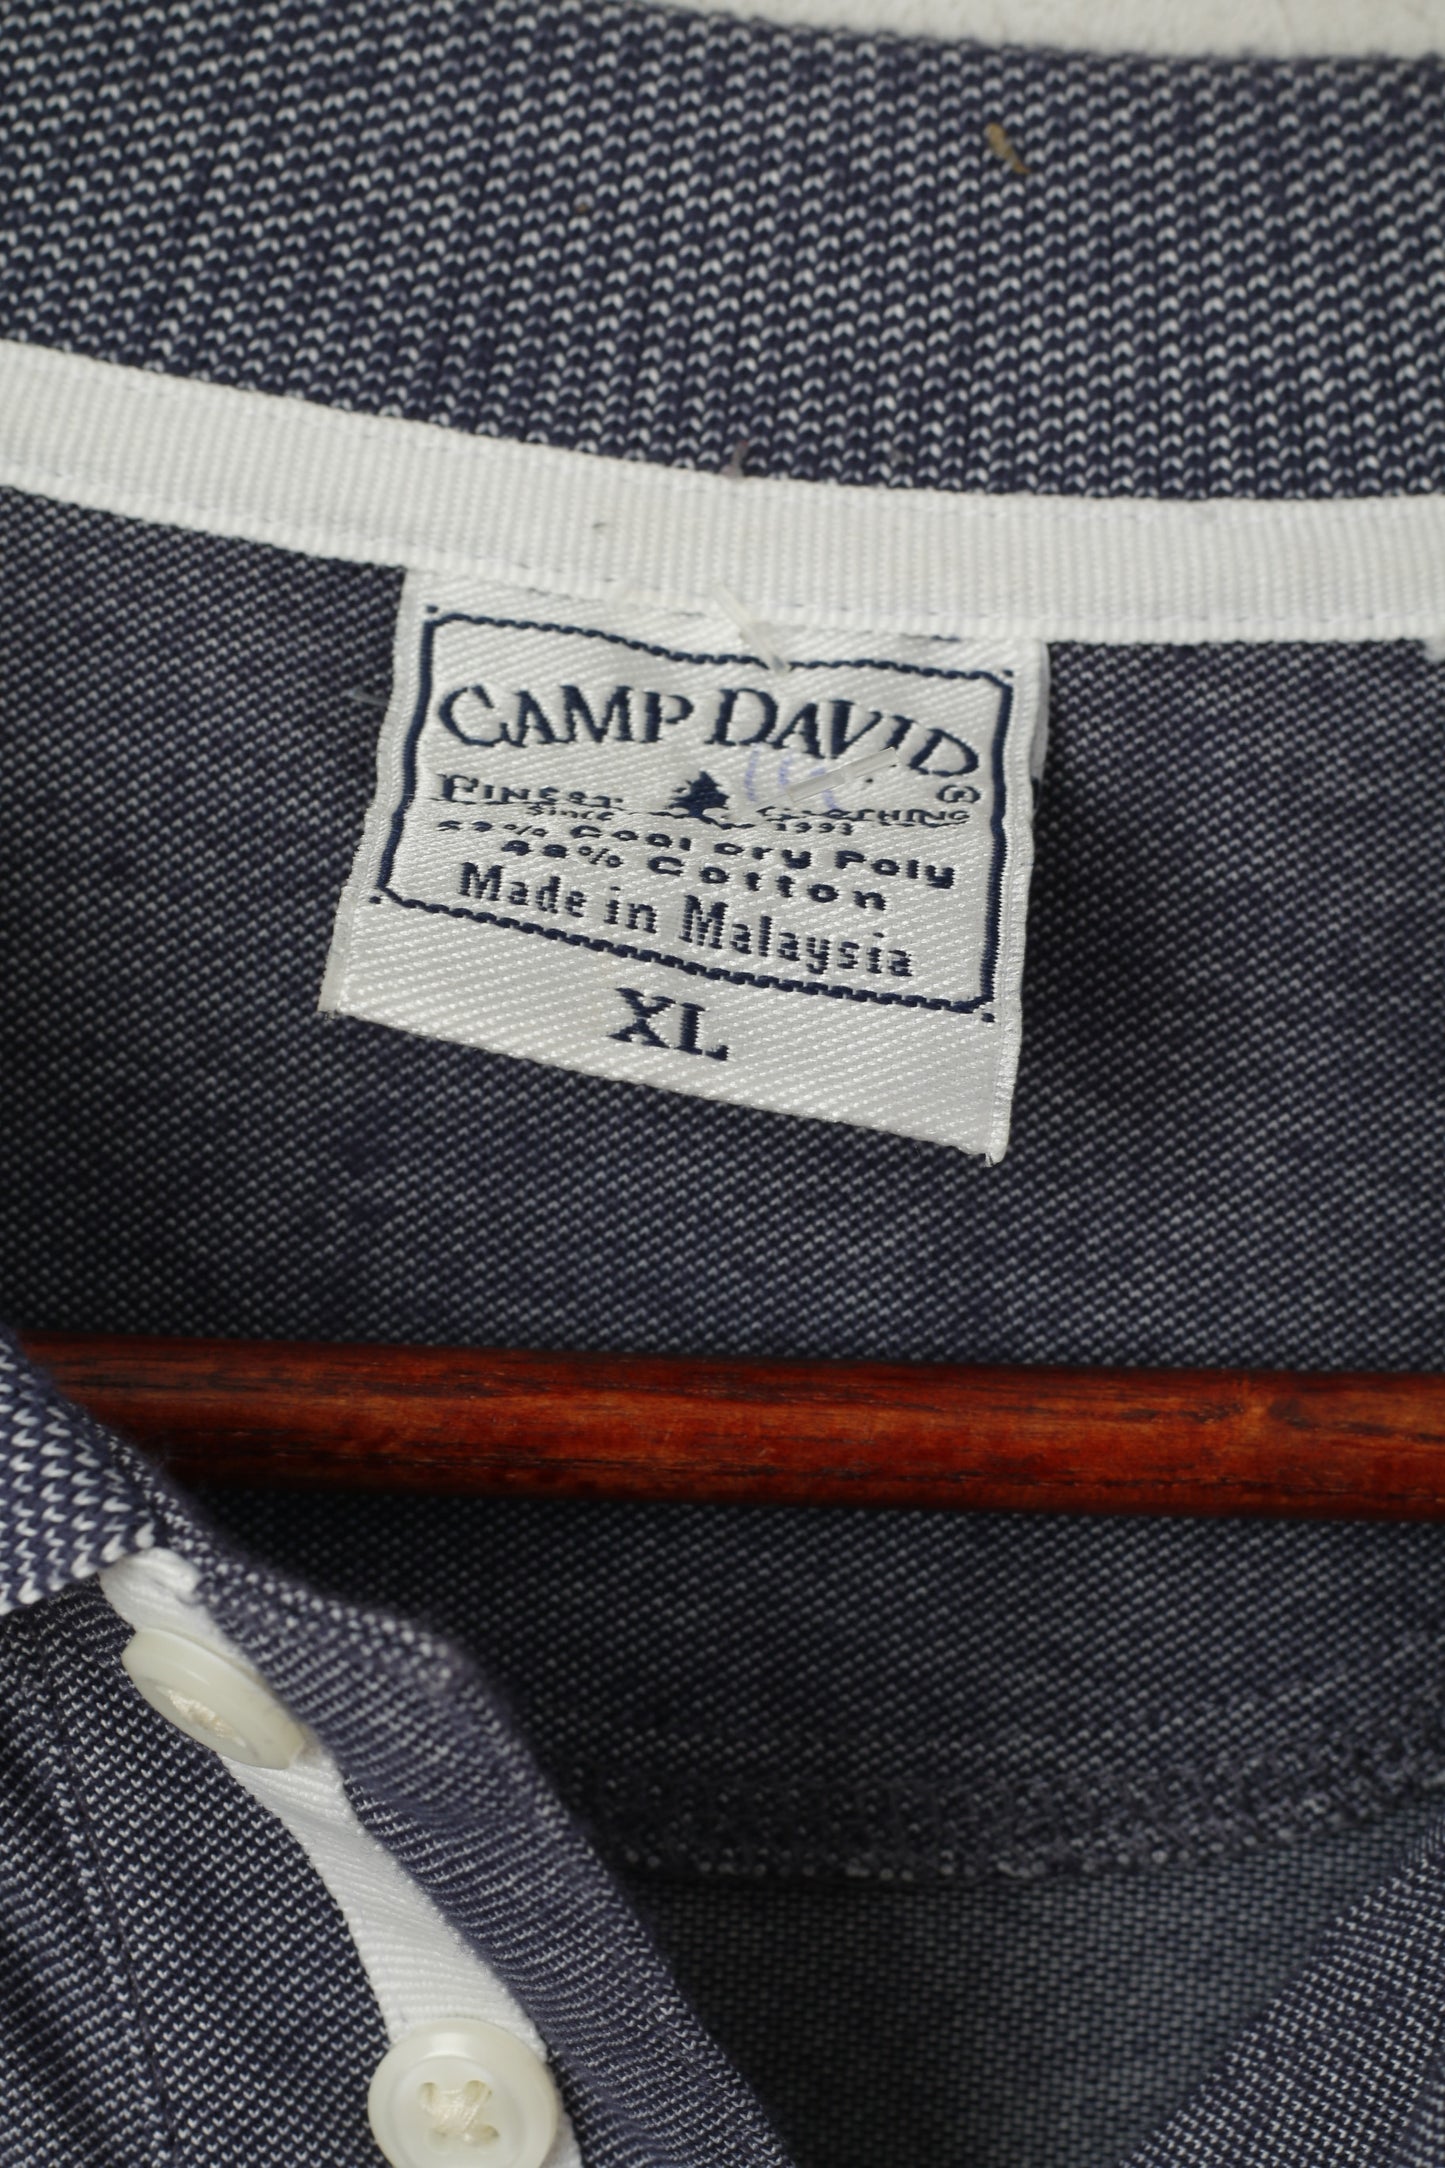 Camp David Men XL Polo Shirt Navy Cotton Newcastle Brown Ale Beer Logo Top